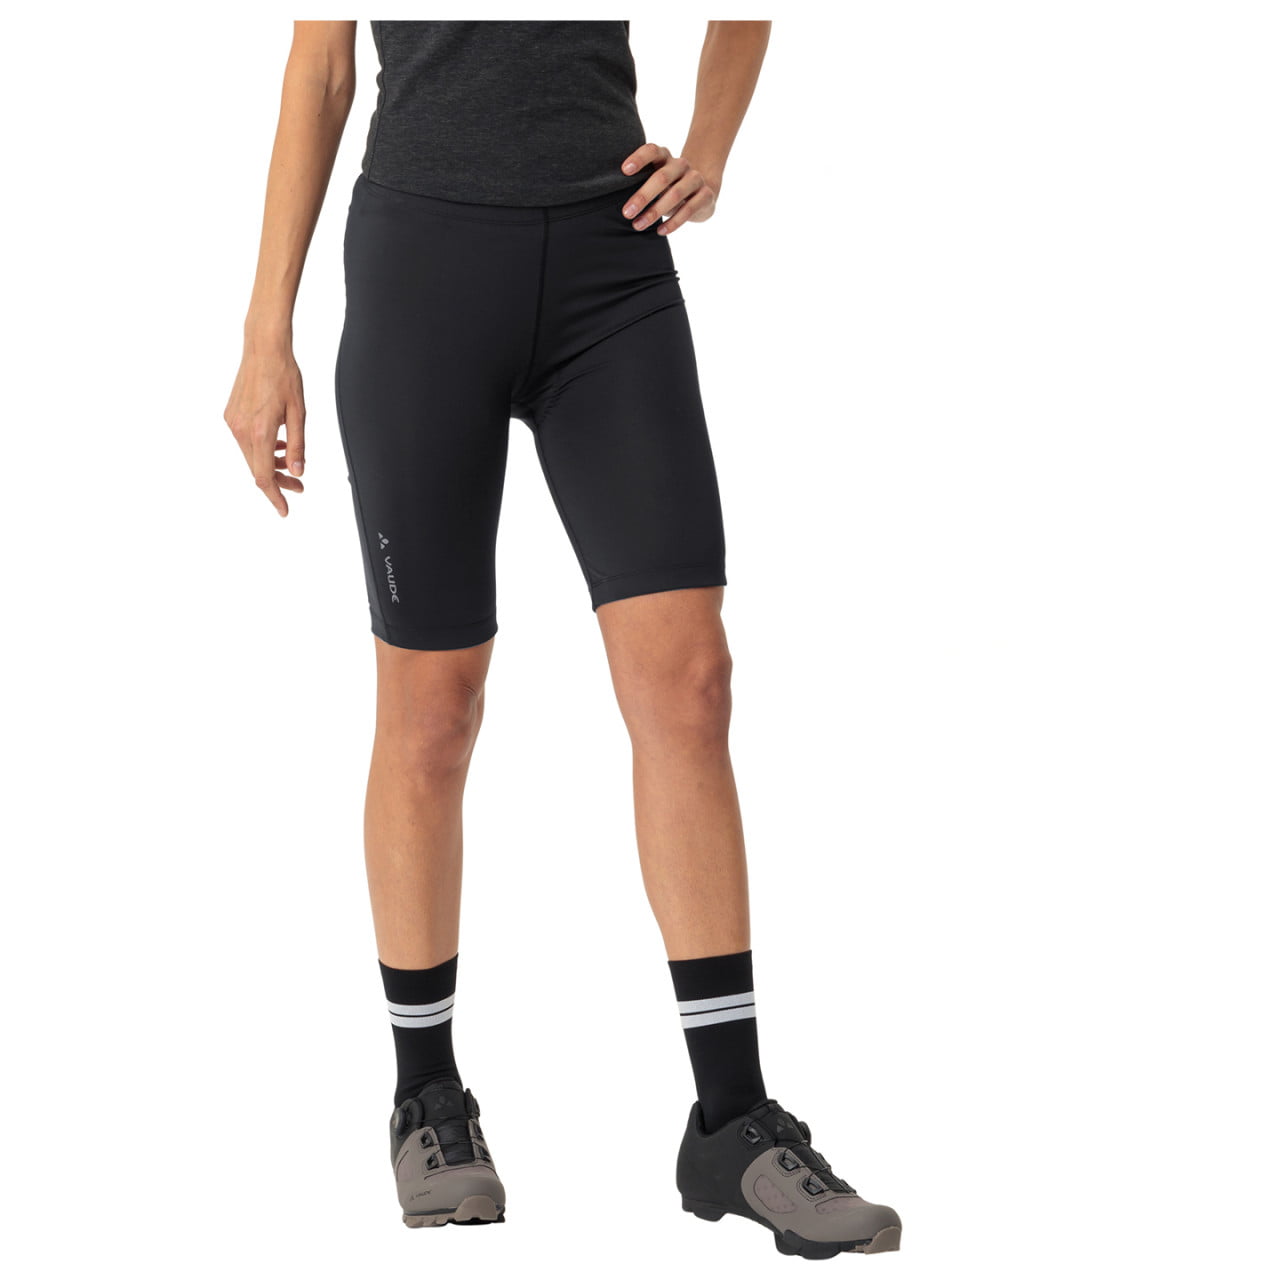 Matera II Women's Cycling Trousers